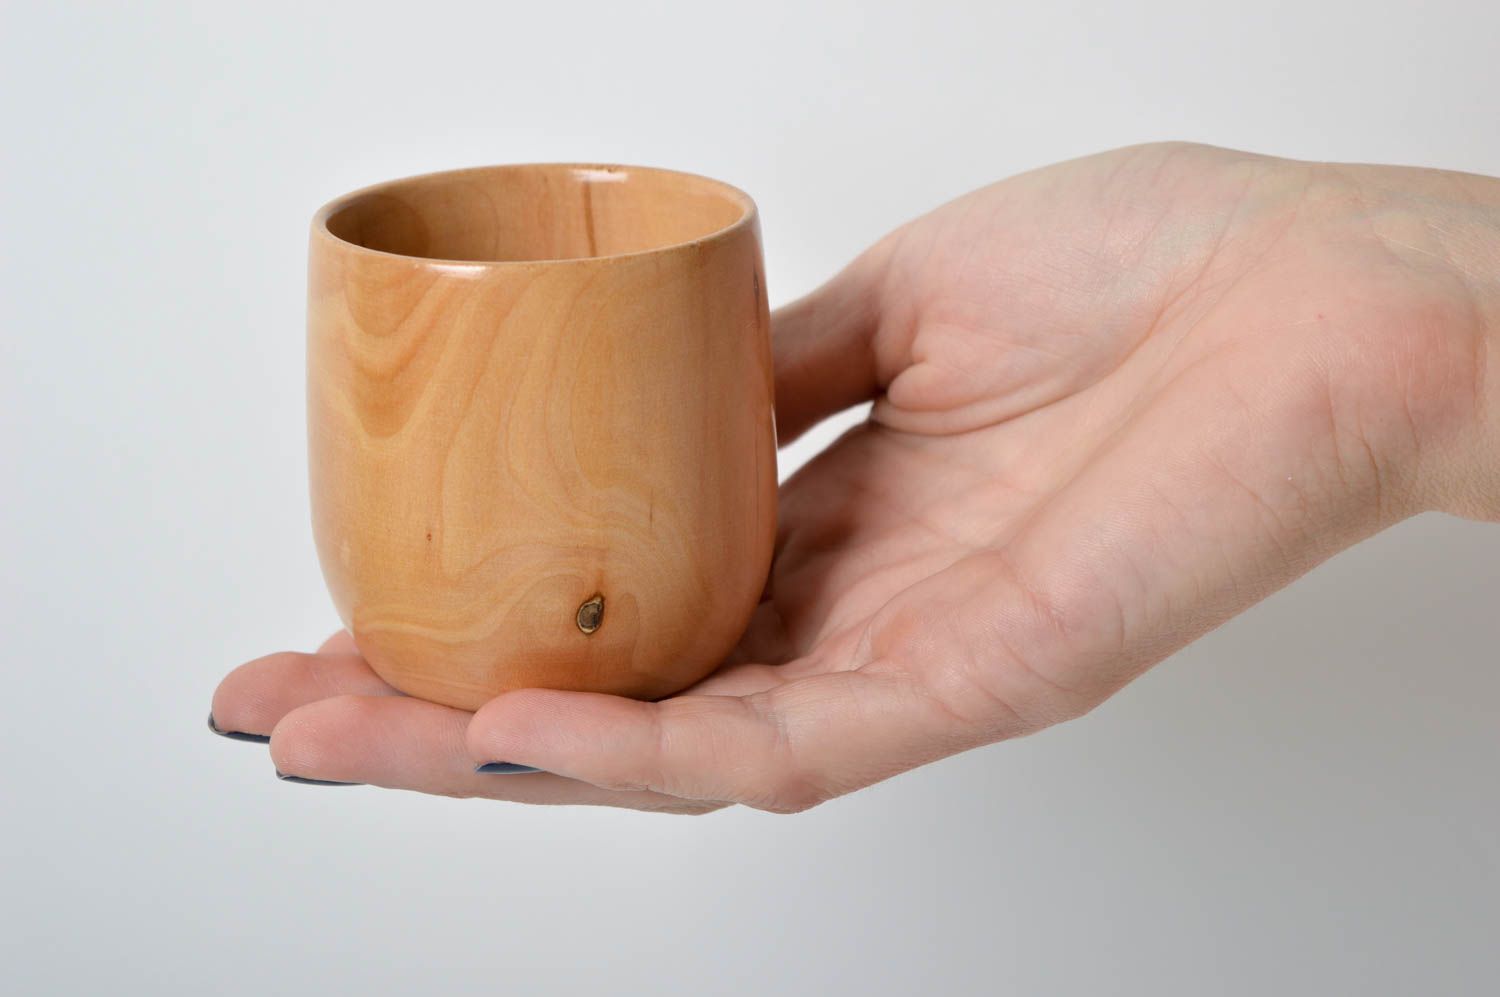 Vaso de madera artesanal utensilio de cocina menaje del hogar vajilla moderna foto 5